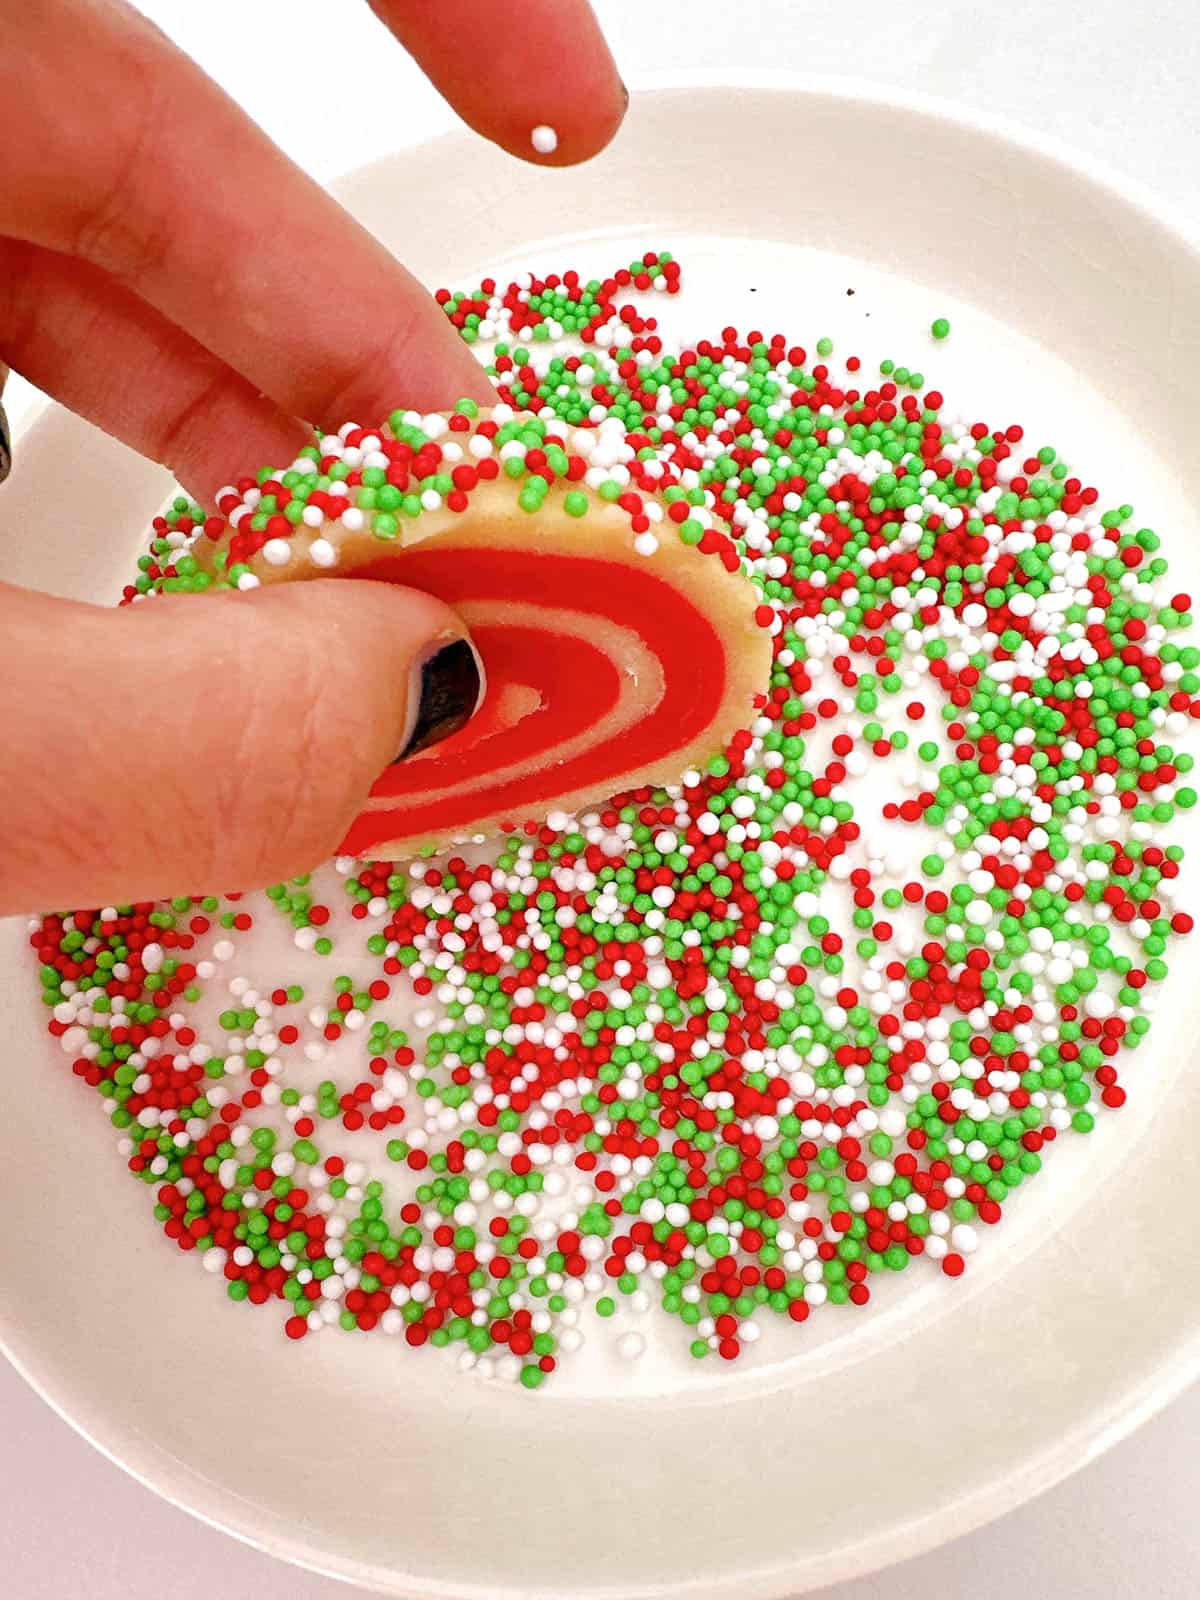 Rolling pinwheel cookie in sprinkles. 